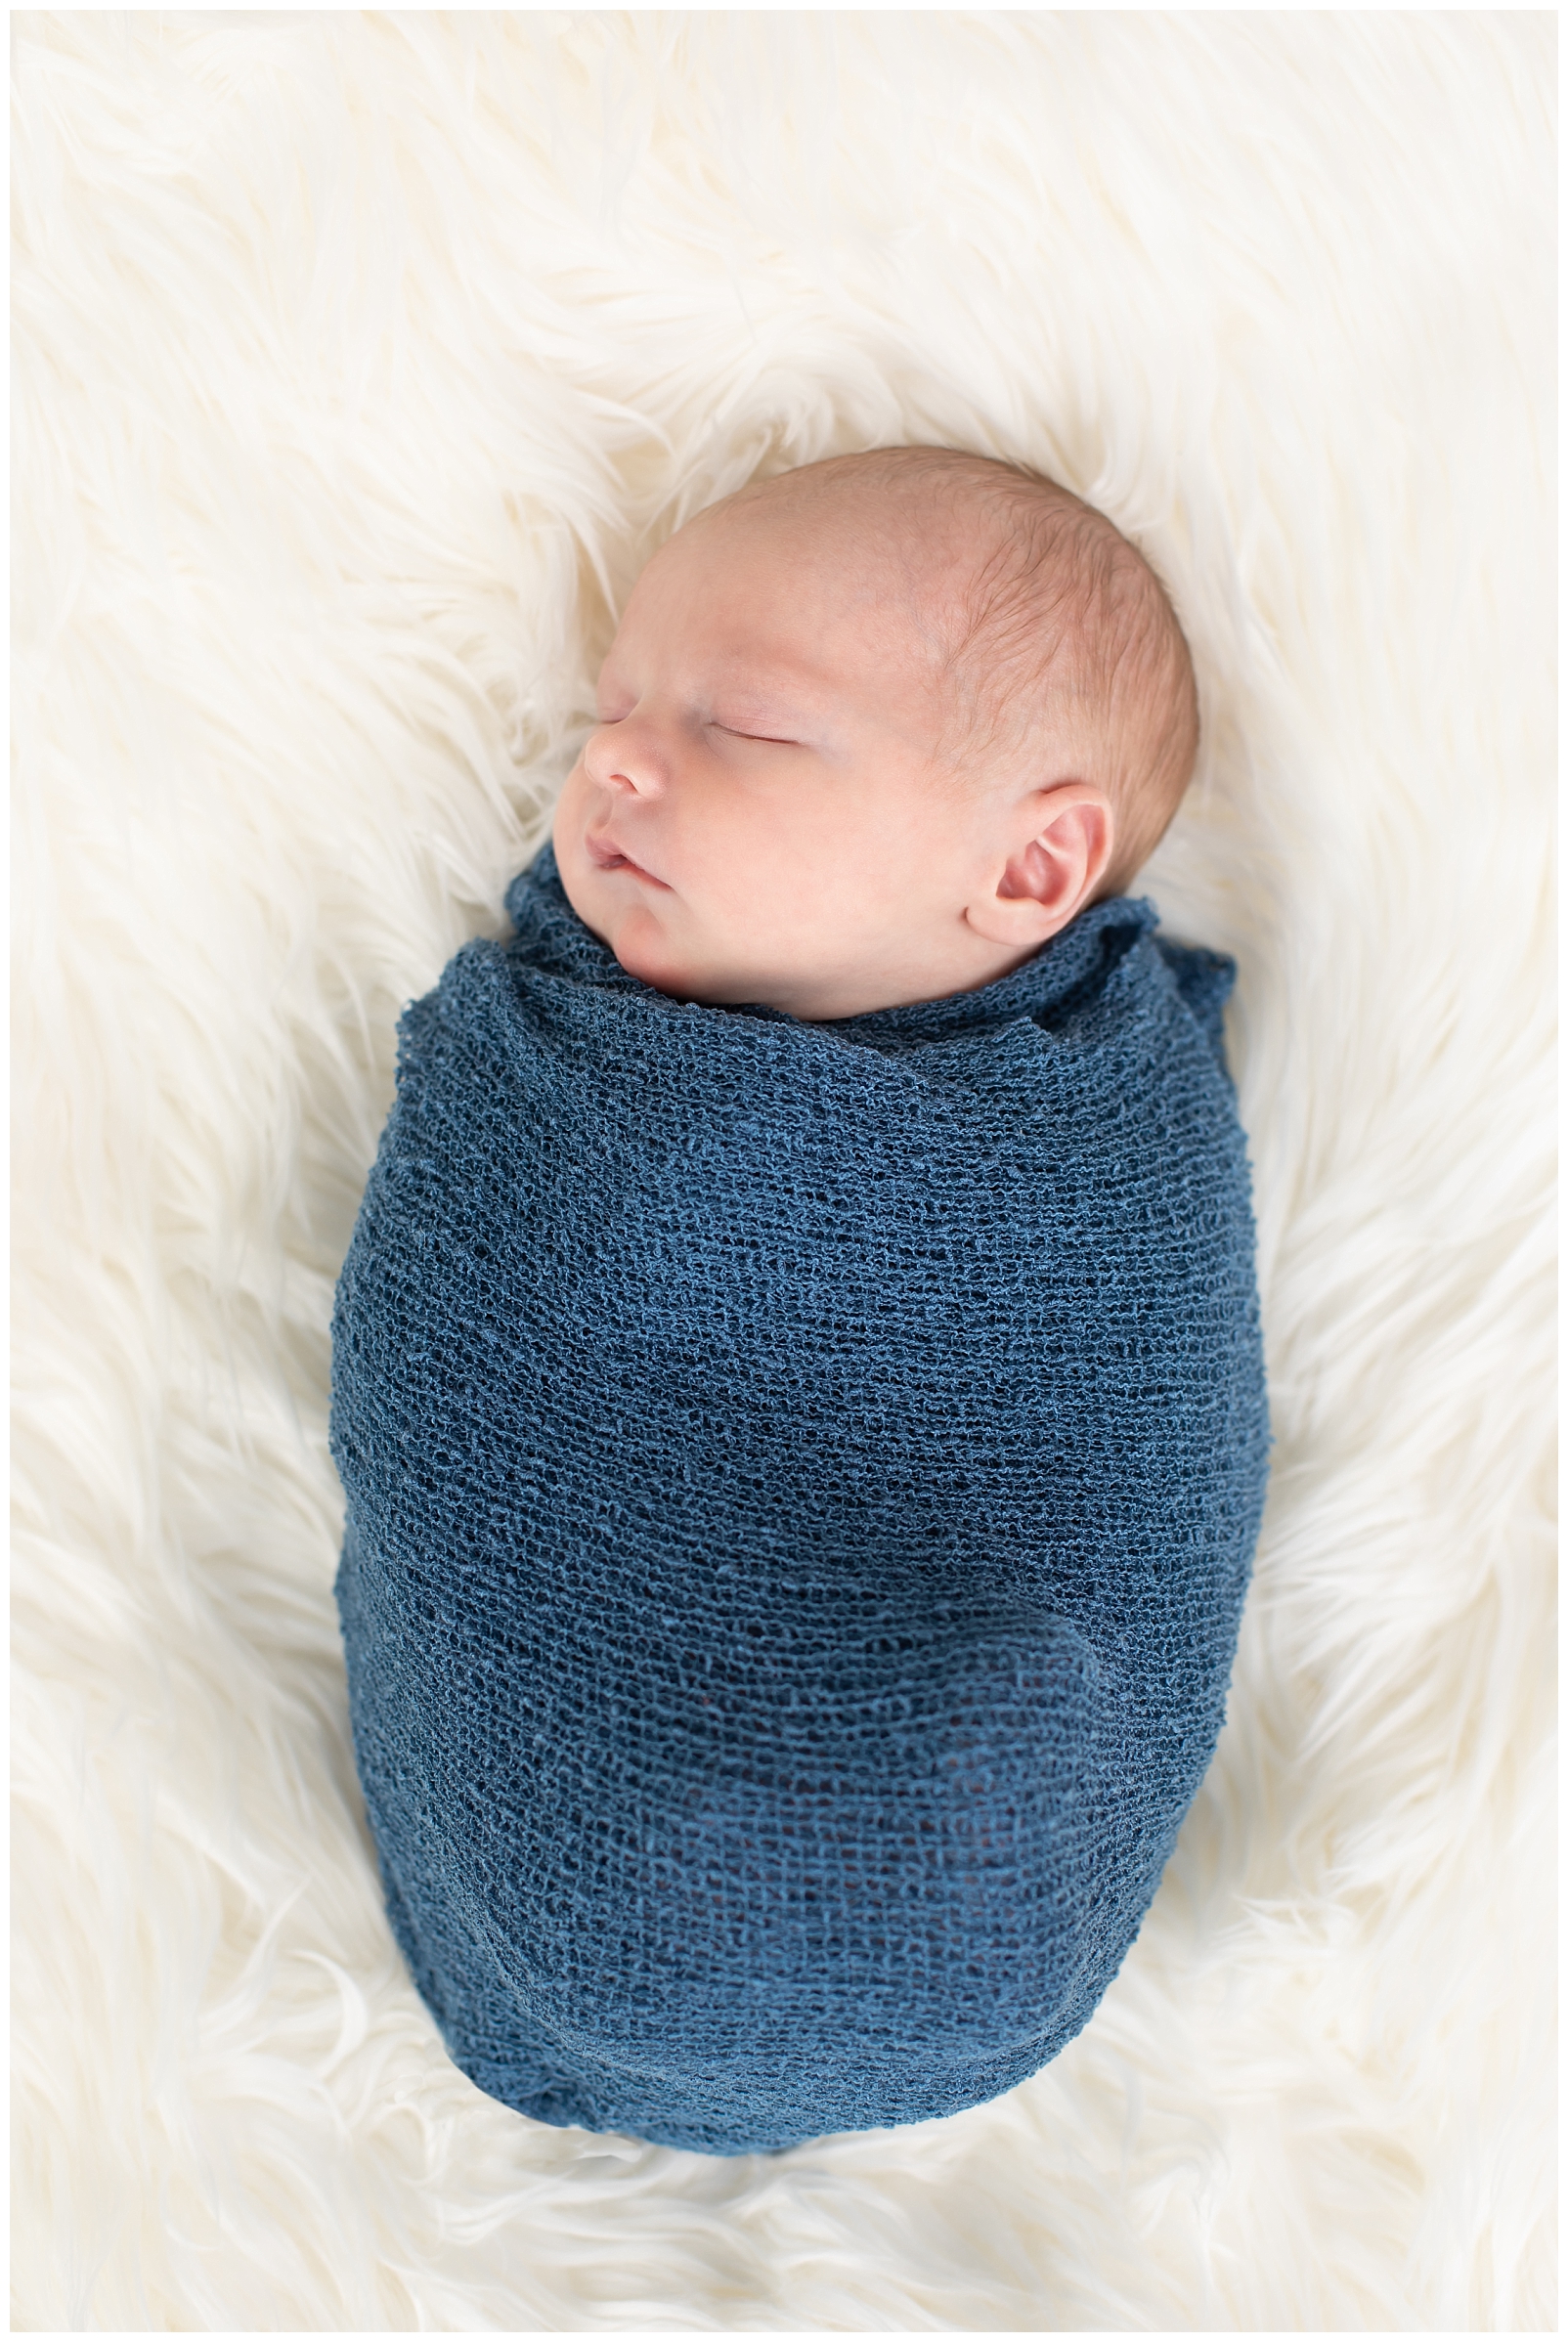 newborn boy in blue wrap